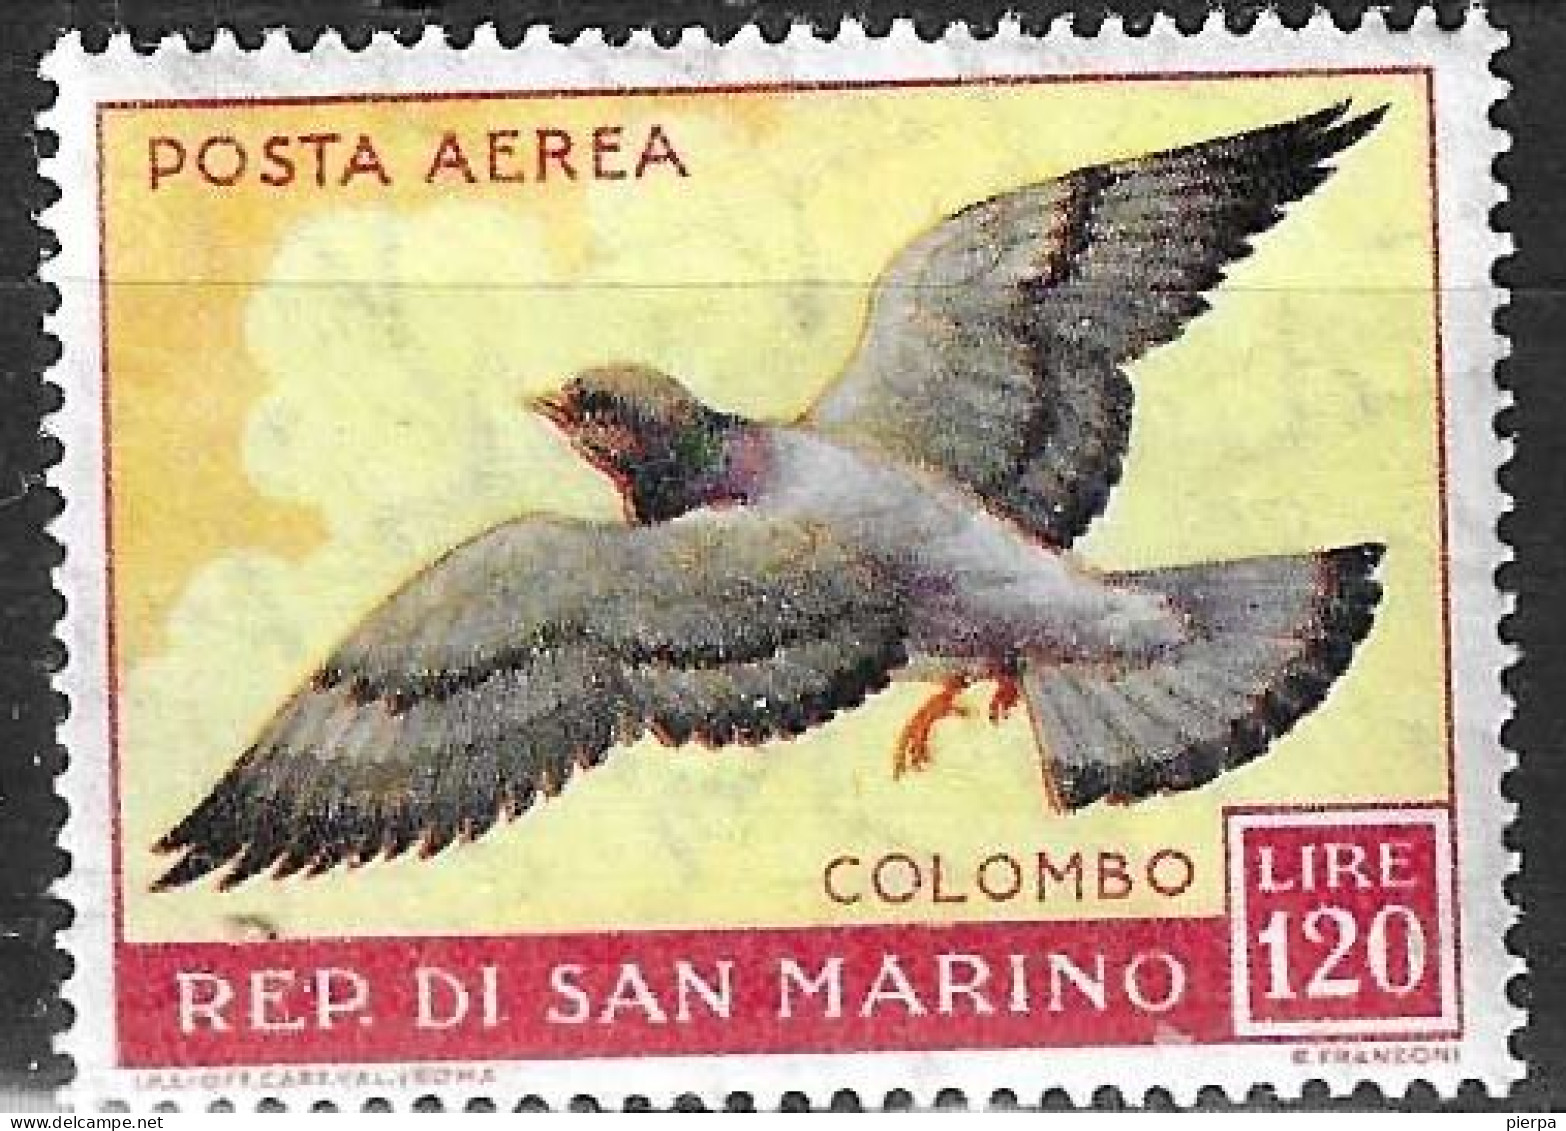 SAN MARINO -1959 - P. AEREA - COLOMBO - LIRE 120- NUOVO -MNH** ( YVERT AV 114- MICHEL 609- SS A 125) - Corréo Aéreo